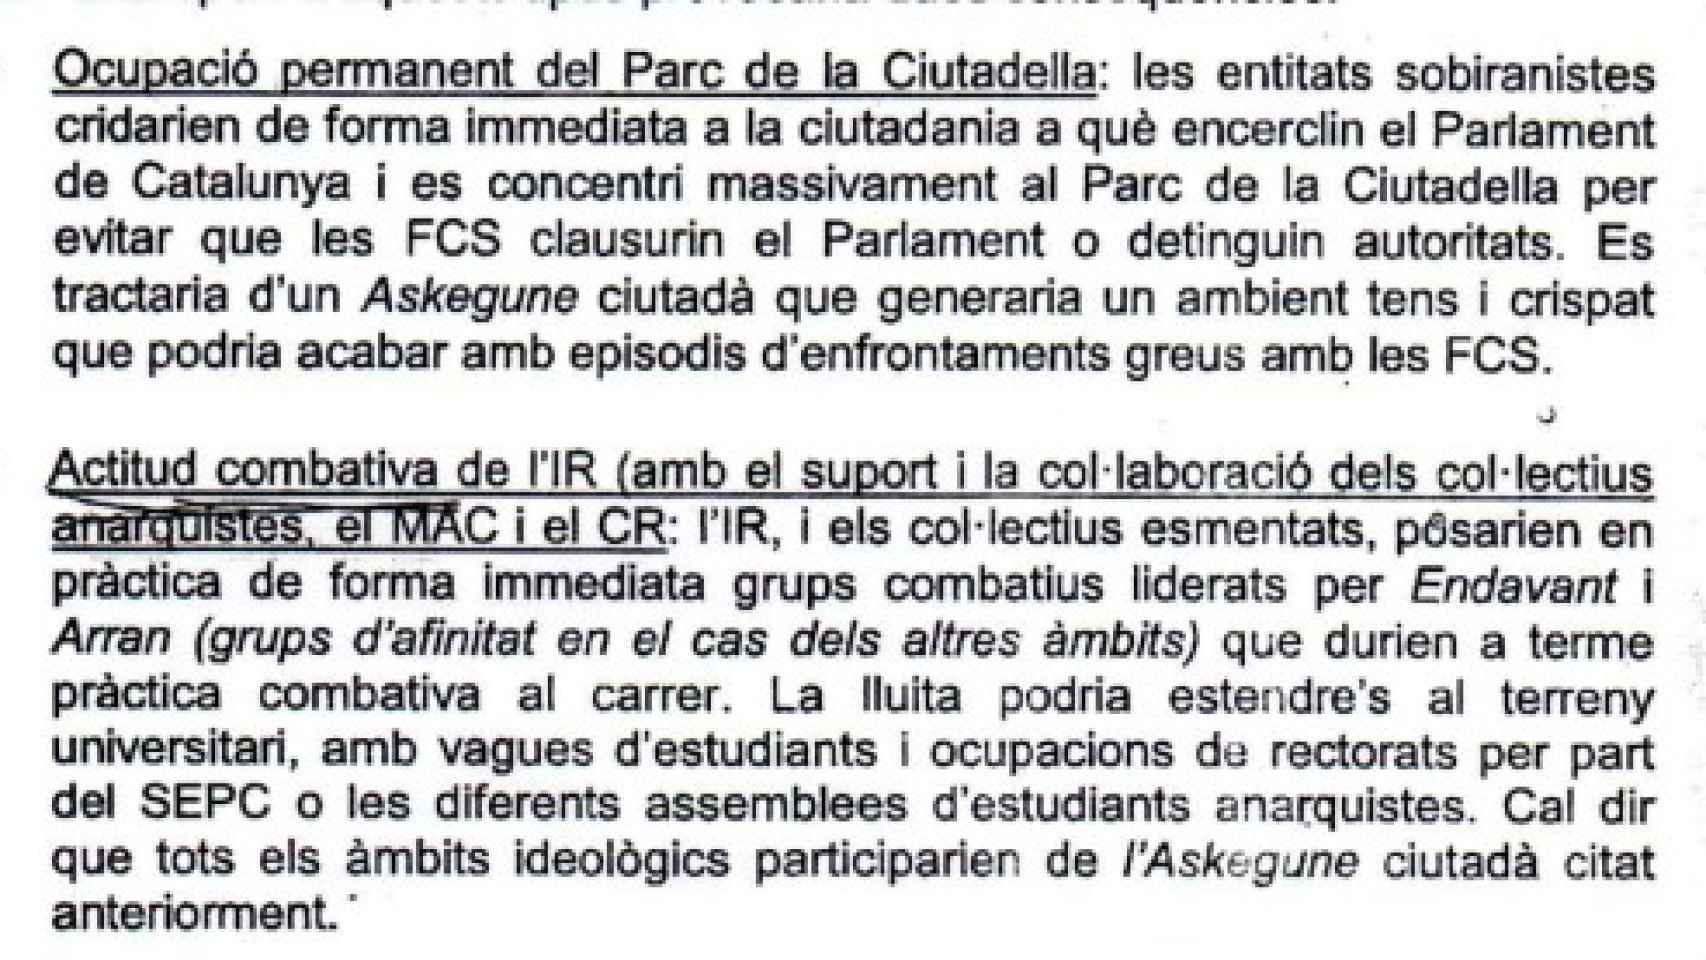 Extracto del informe de los mossos sobre la acampada en La Cuitadella.